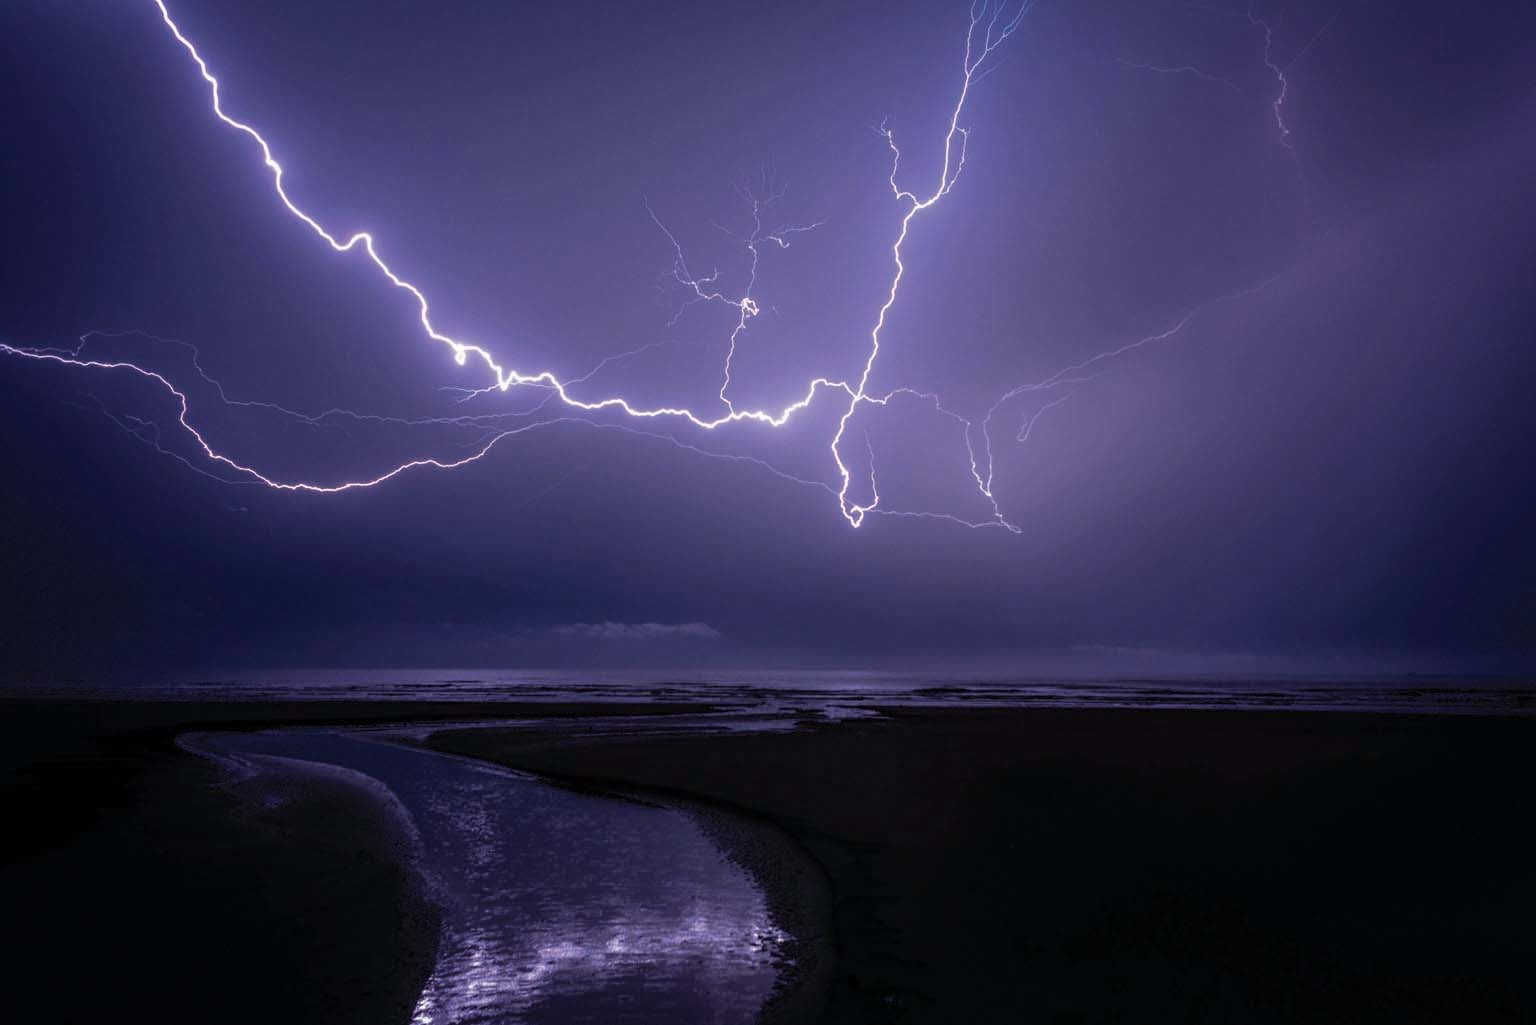 Salty Sea Spray Keeps Lightning Strikes Away - Scientific American